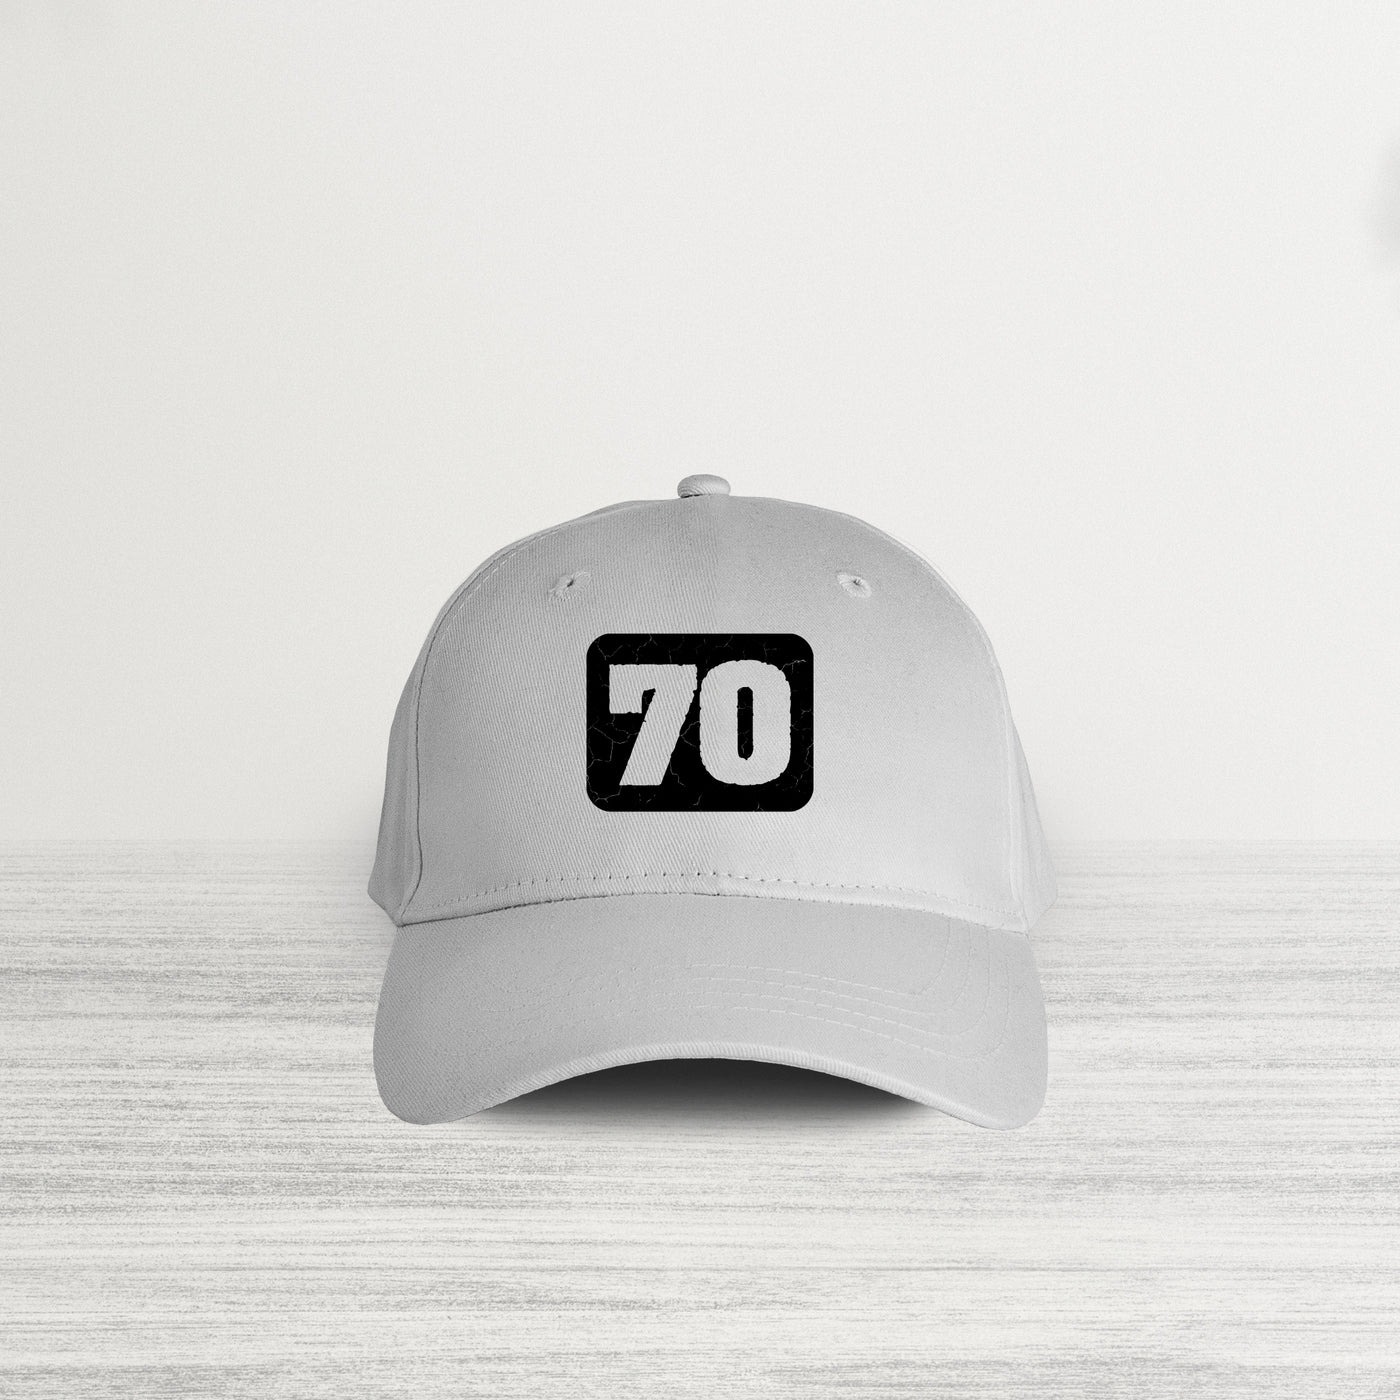 70 HAT